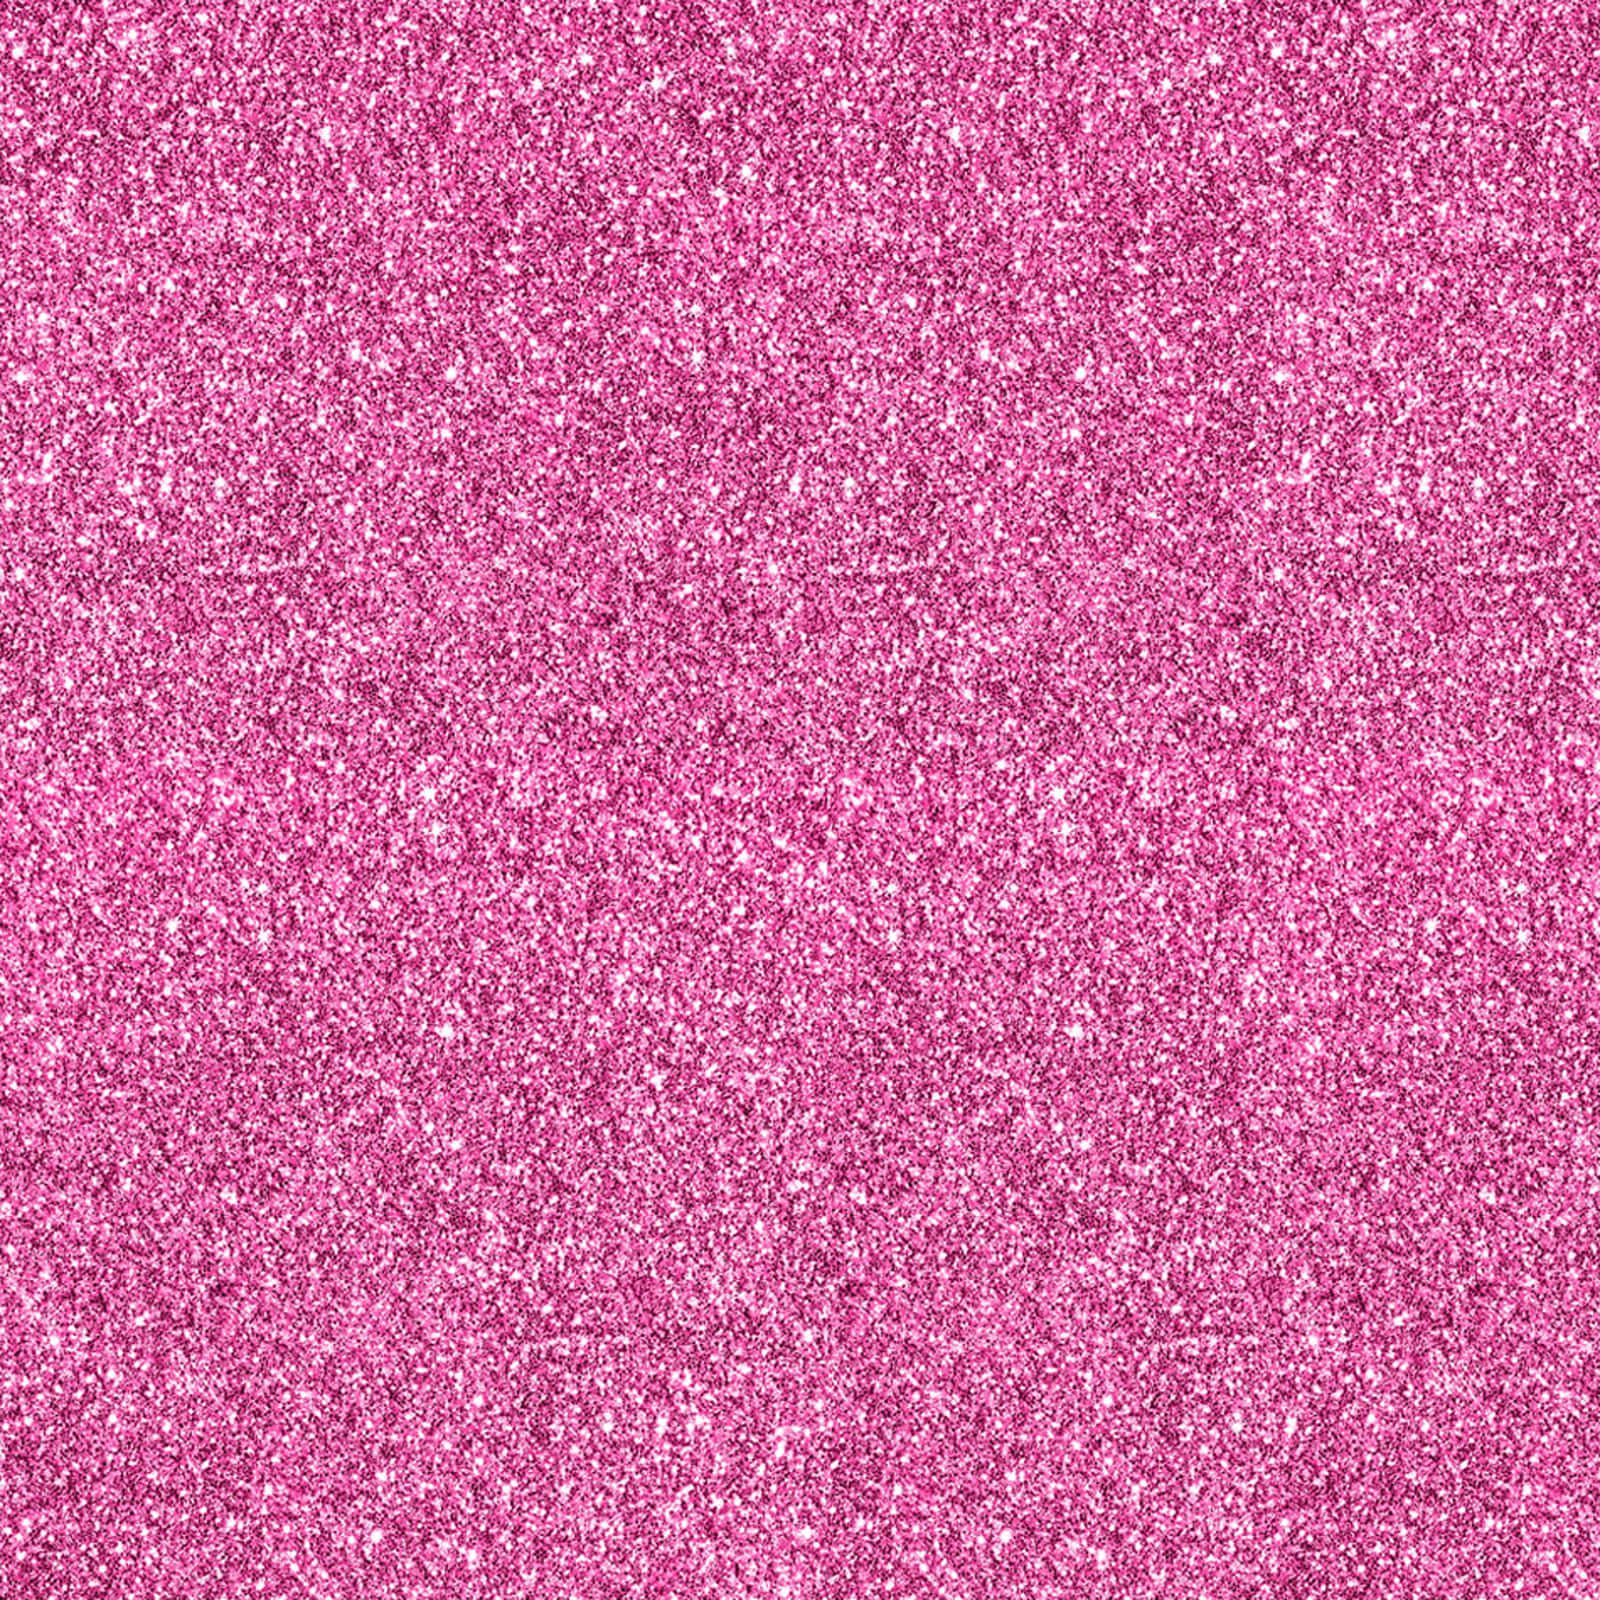 Fasciner din plads med den livlige glitter af pink nuancer.